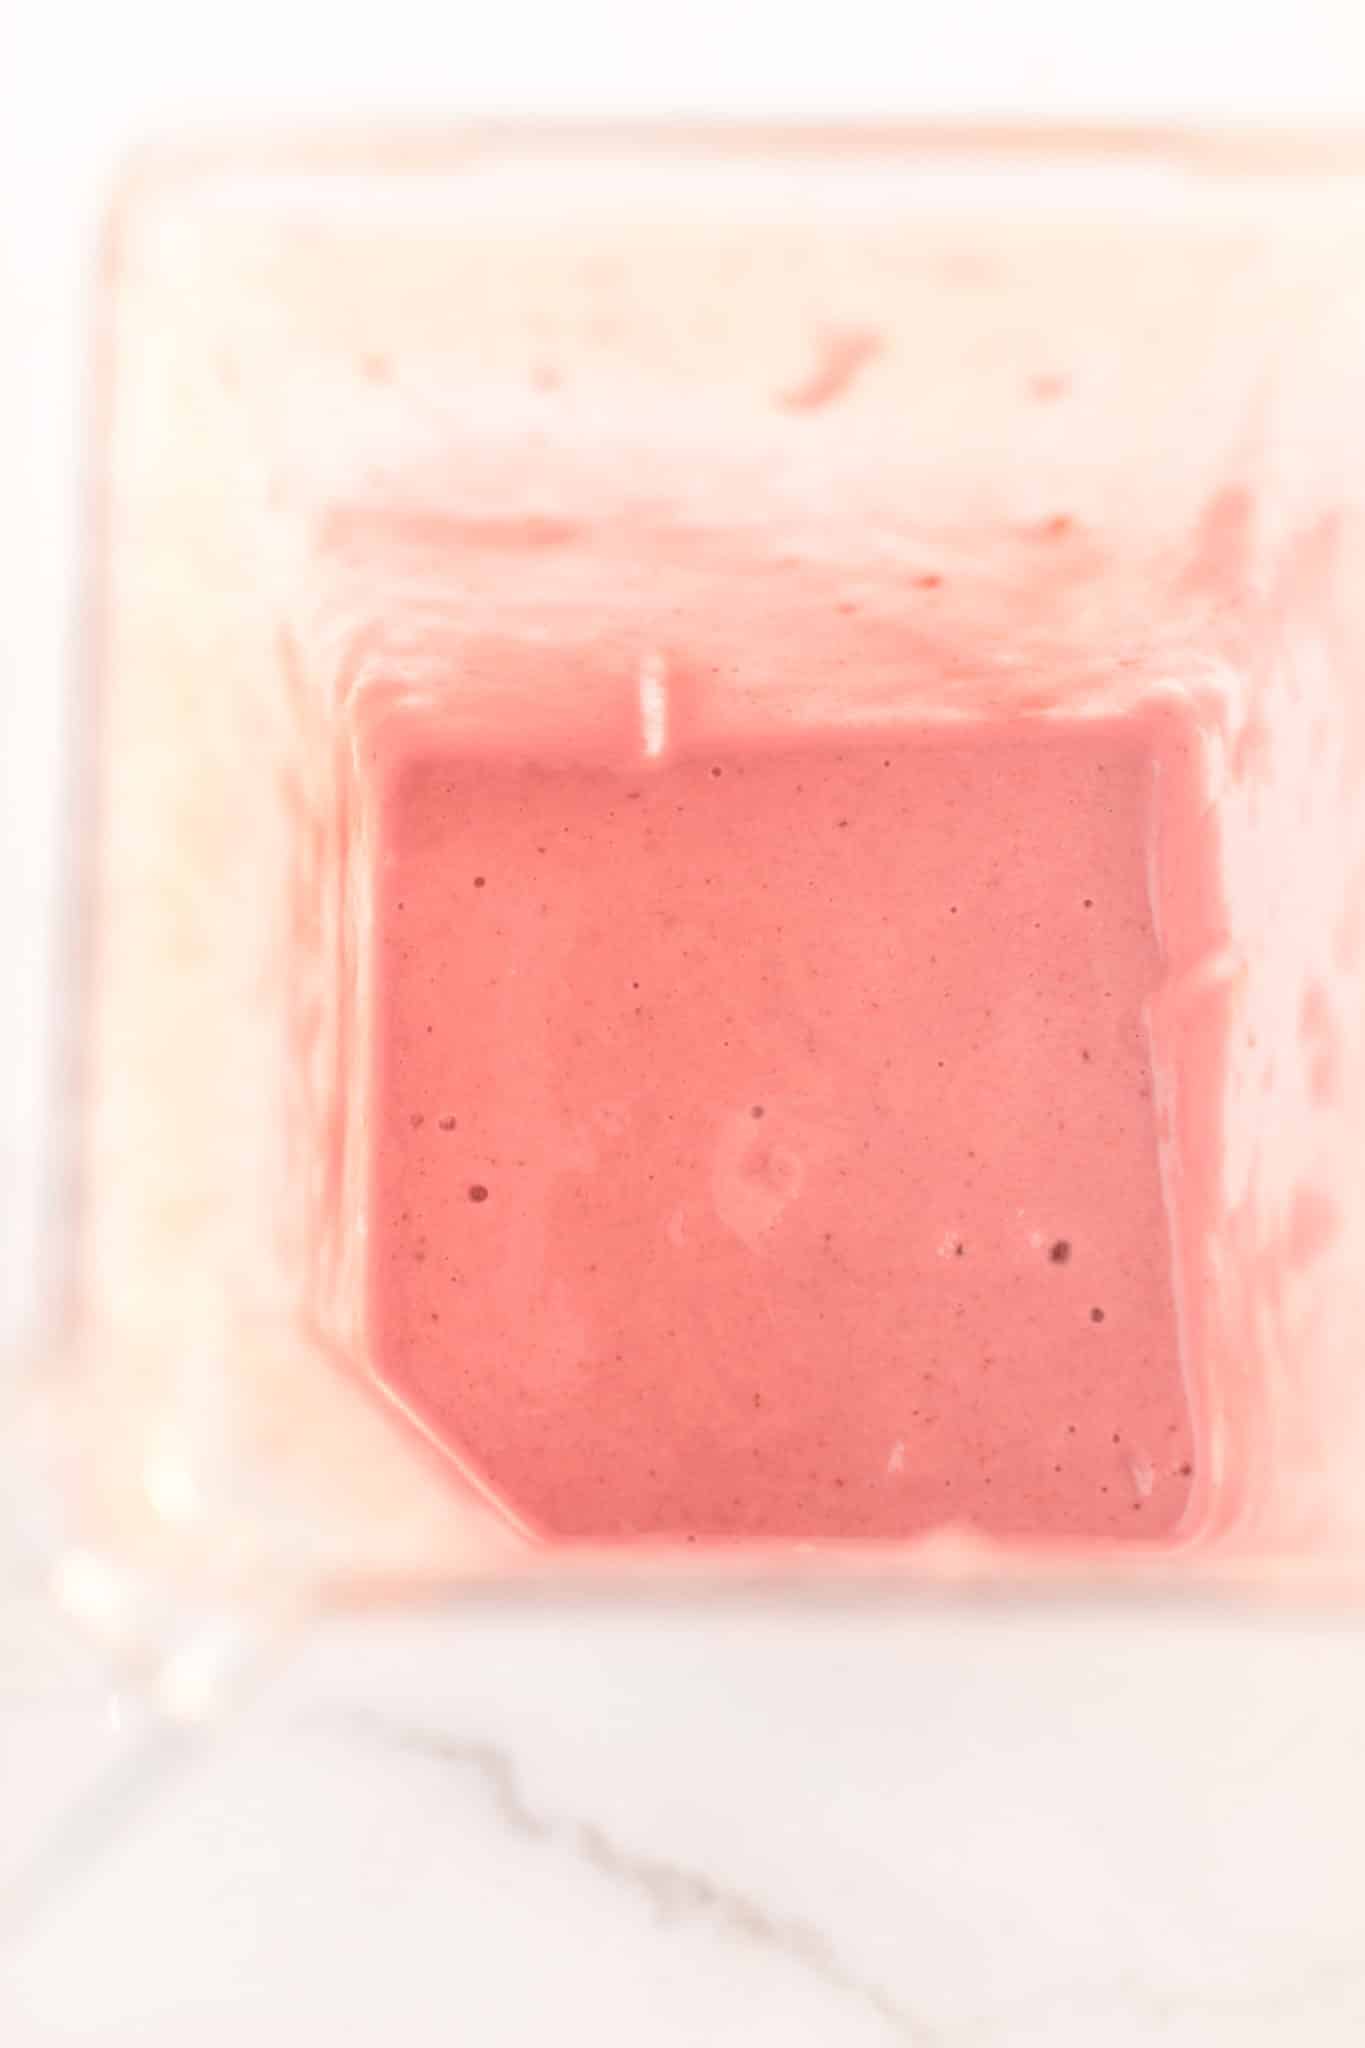 strawberry milkshake in blender